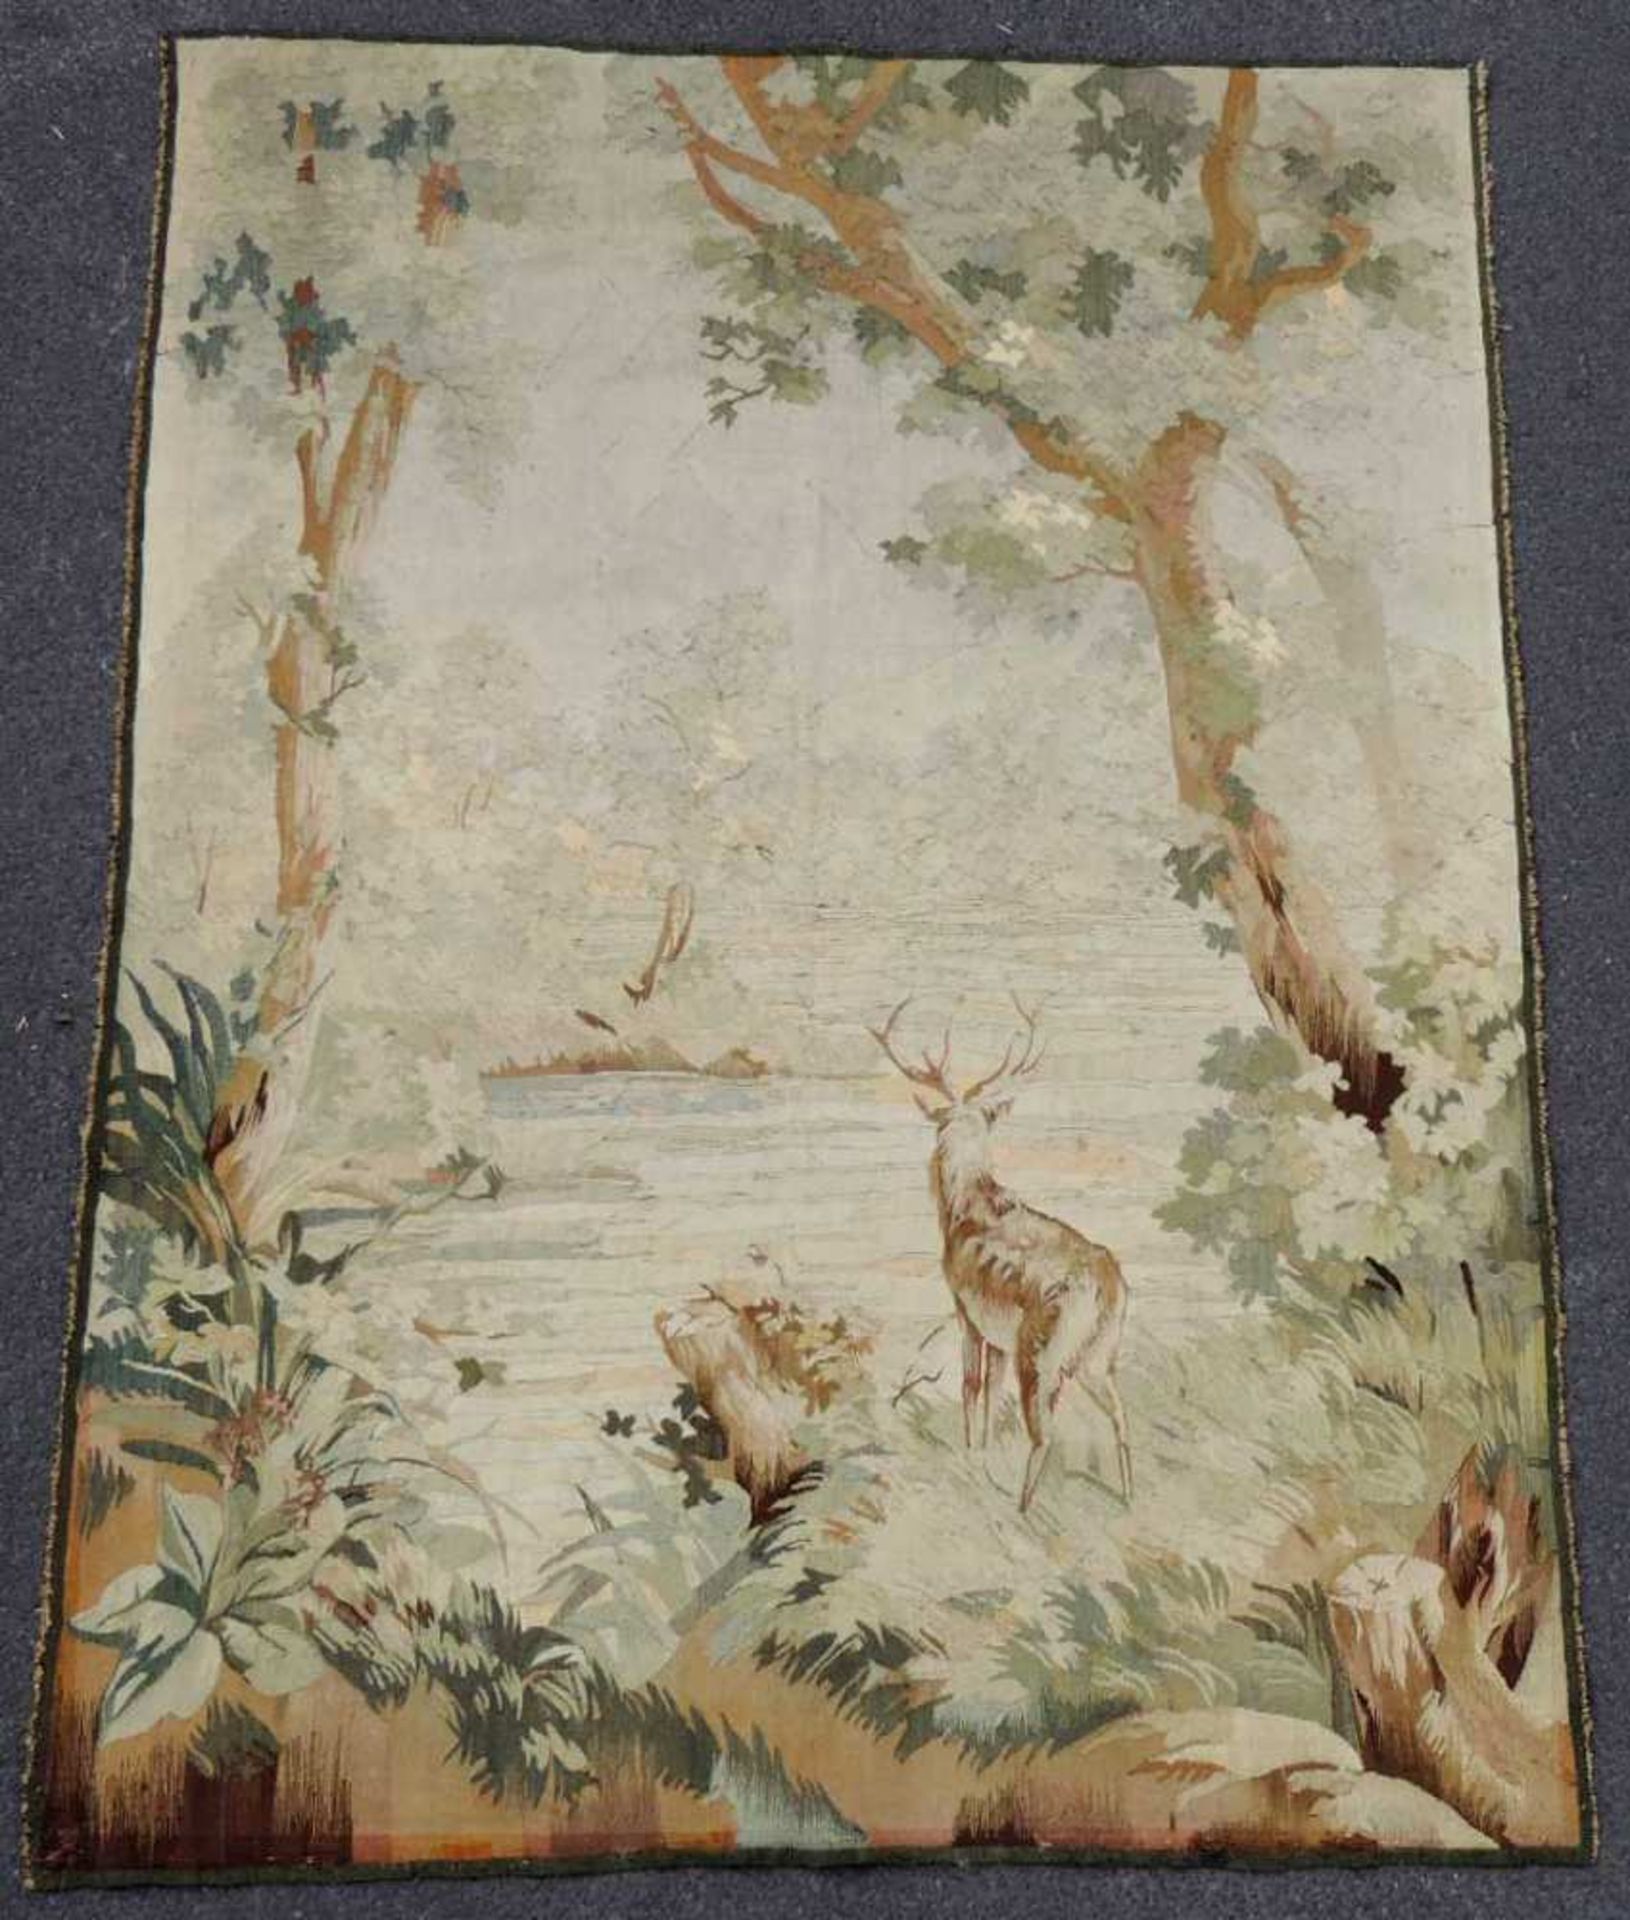 Aubusson-Tapisserie. Frankreich, antik, um 1860. 160 cm x 120 cm. Handgewebt, Wolle und Seide.